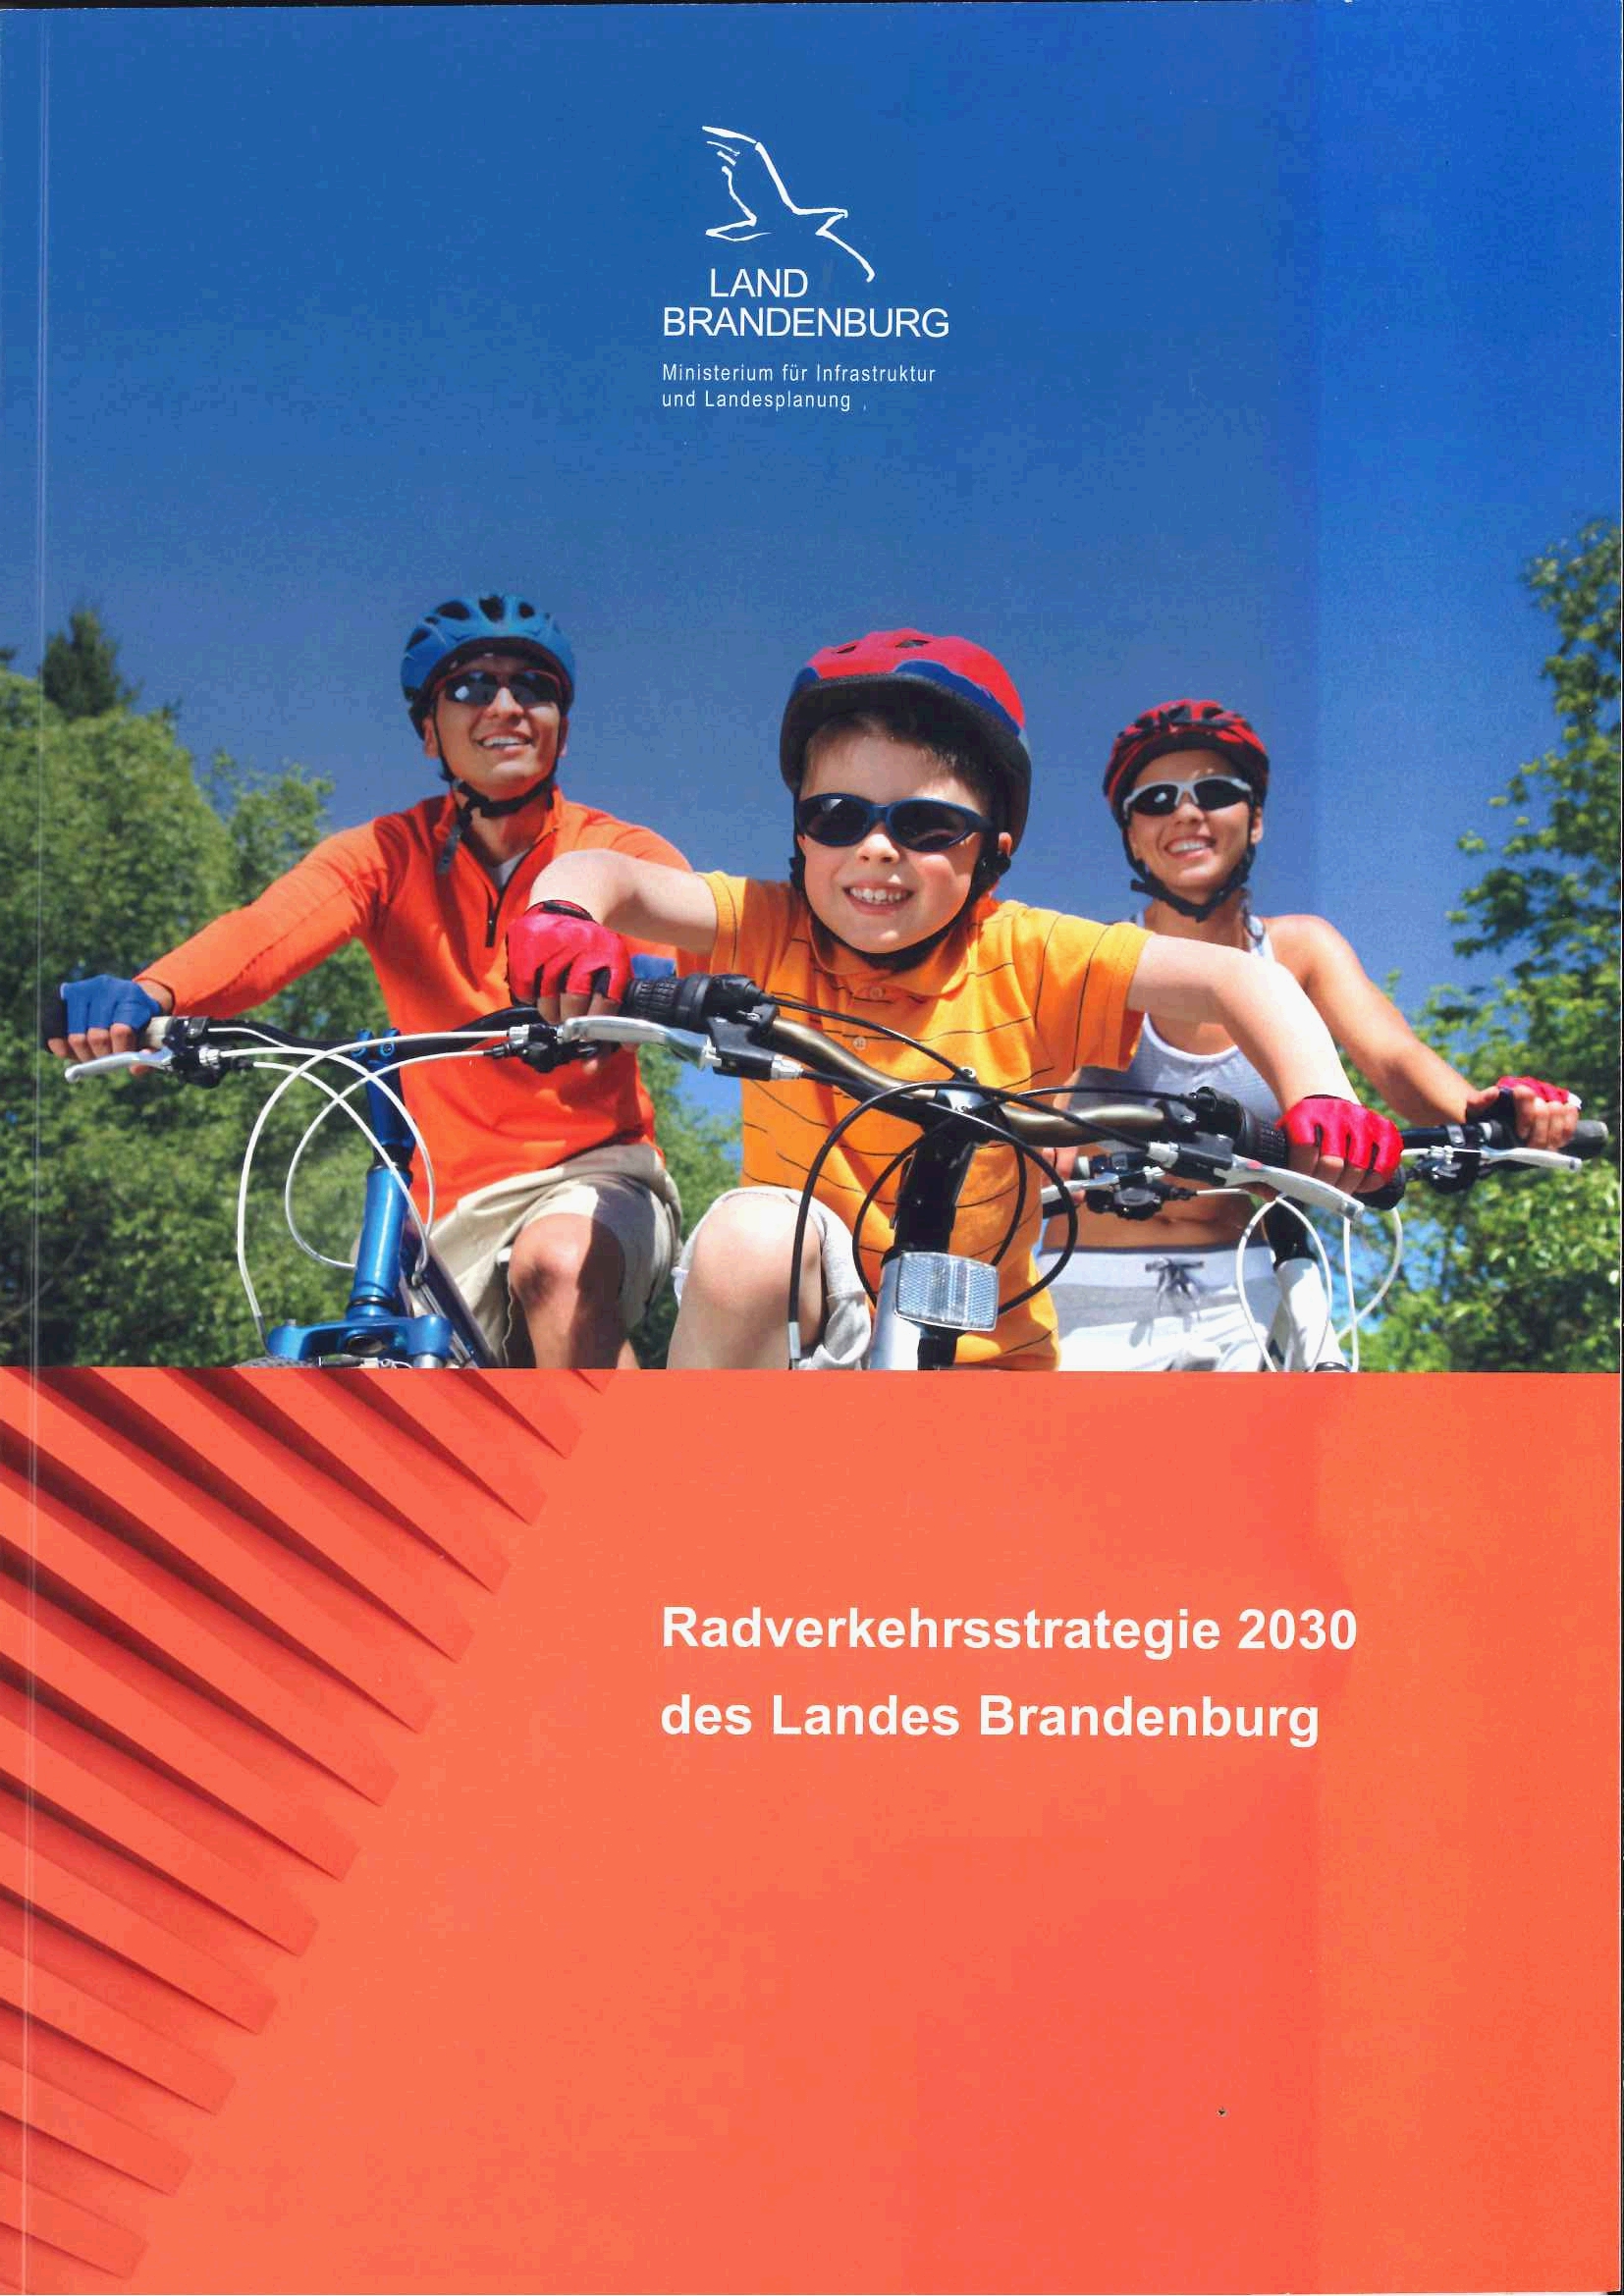 Bild vergrößern (Bild: Radverkehrsstrategie 2030 des Landes Brandenburg)